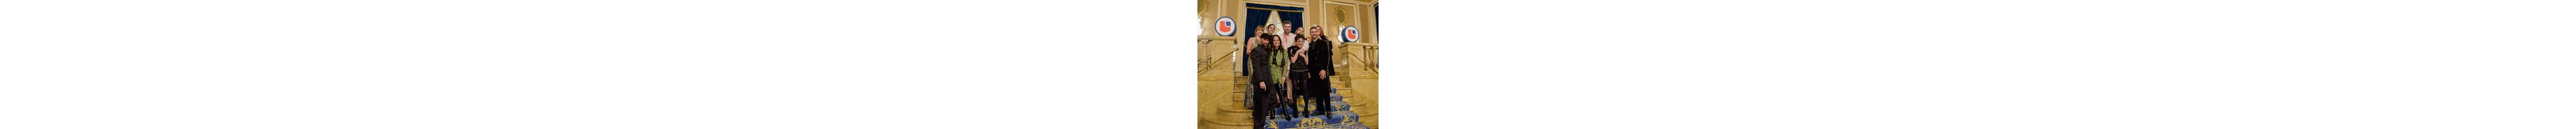 Un grupo alegre vestido de gala posa en la escalera de un lugar opulento, adornado con el logo de LCI.